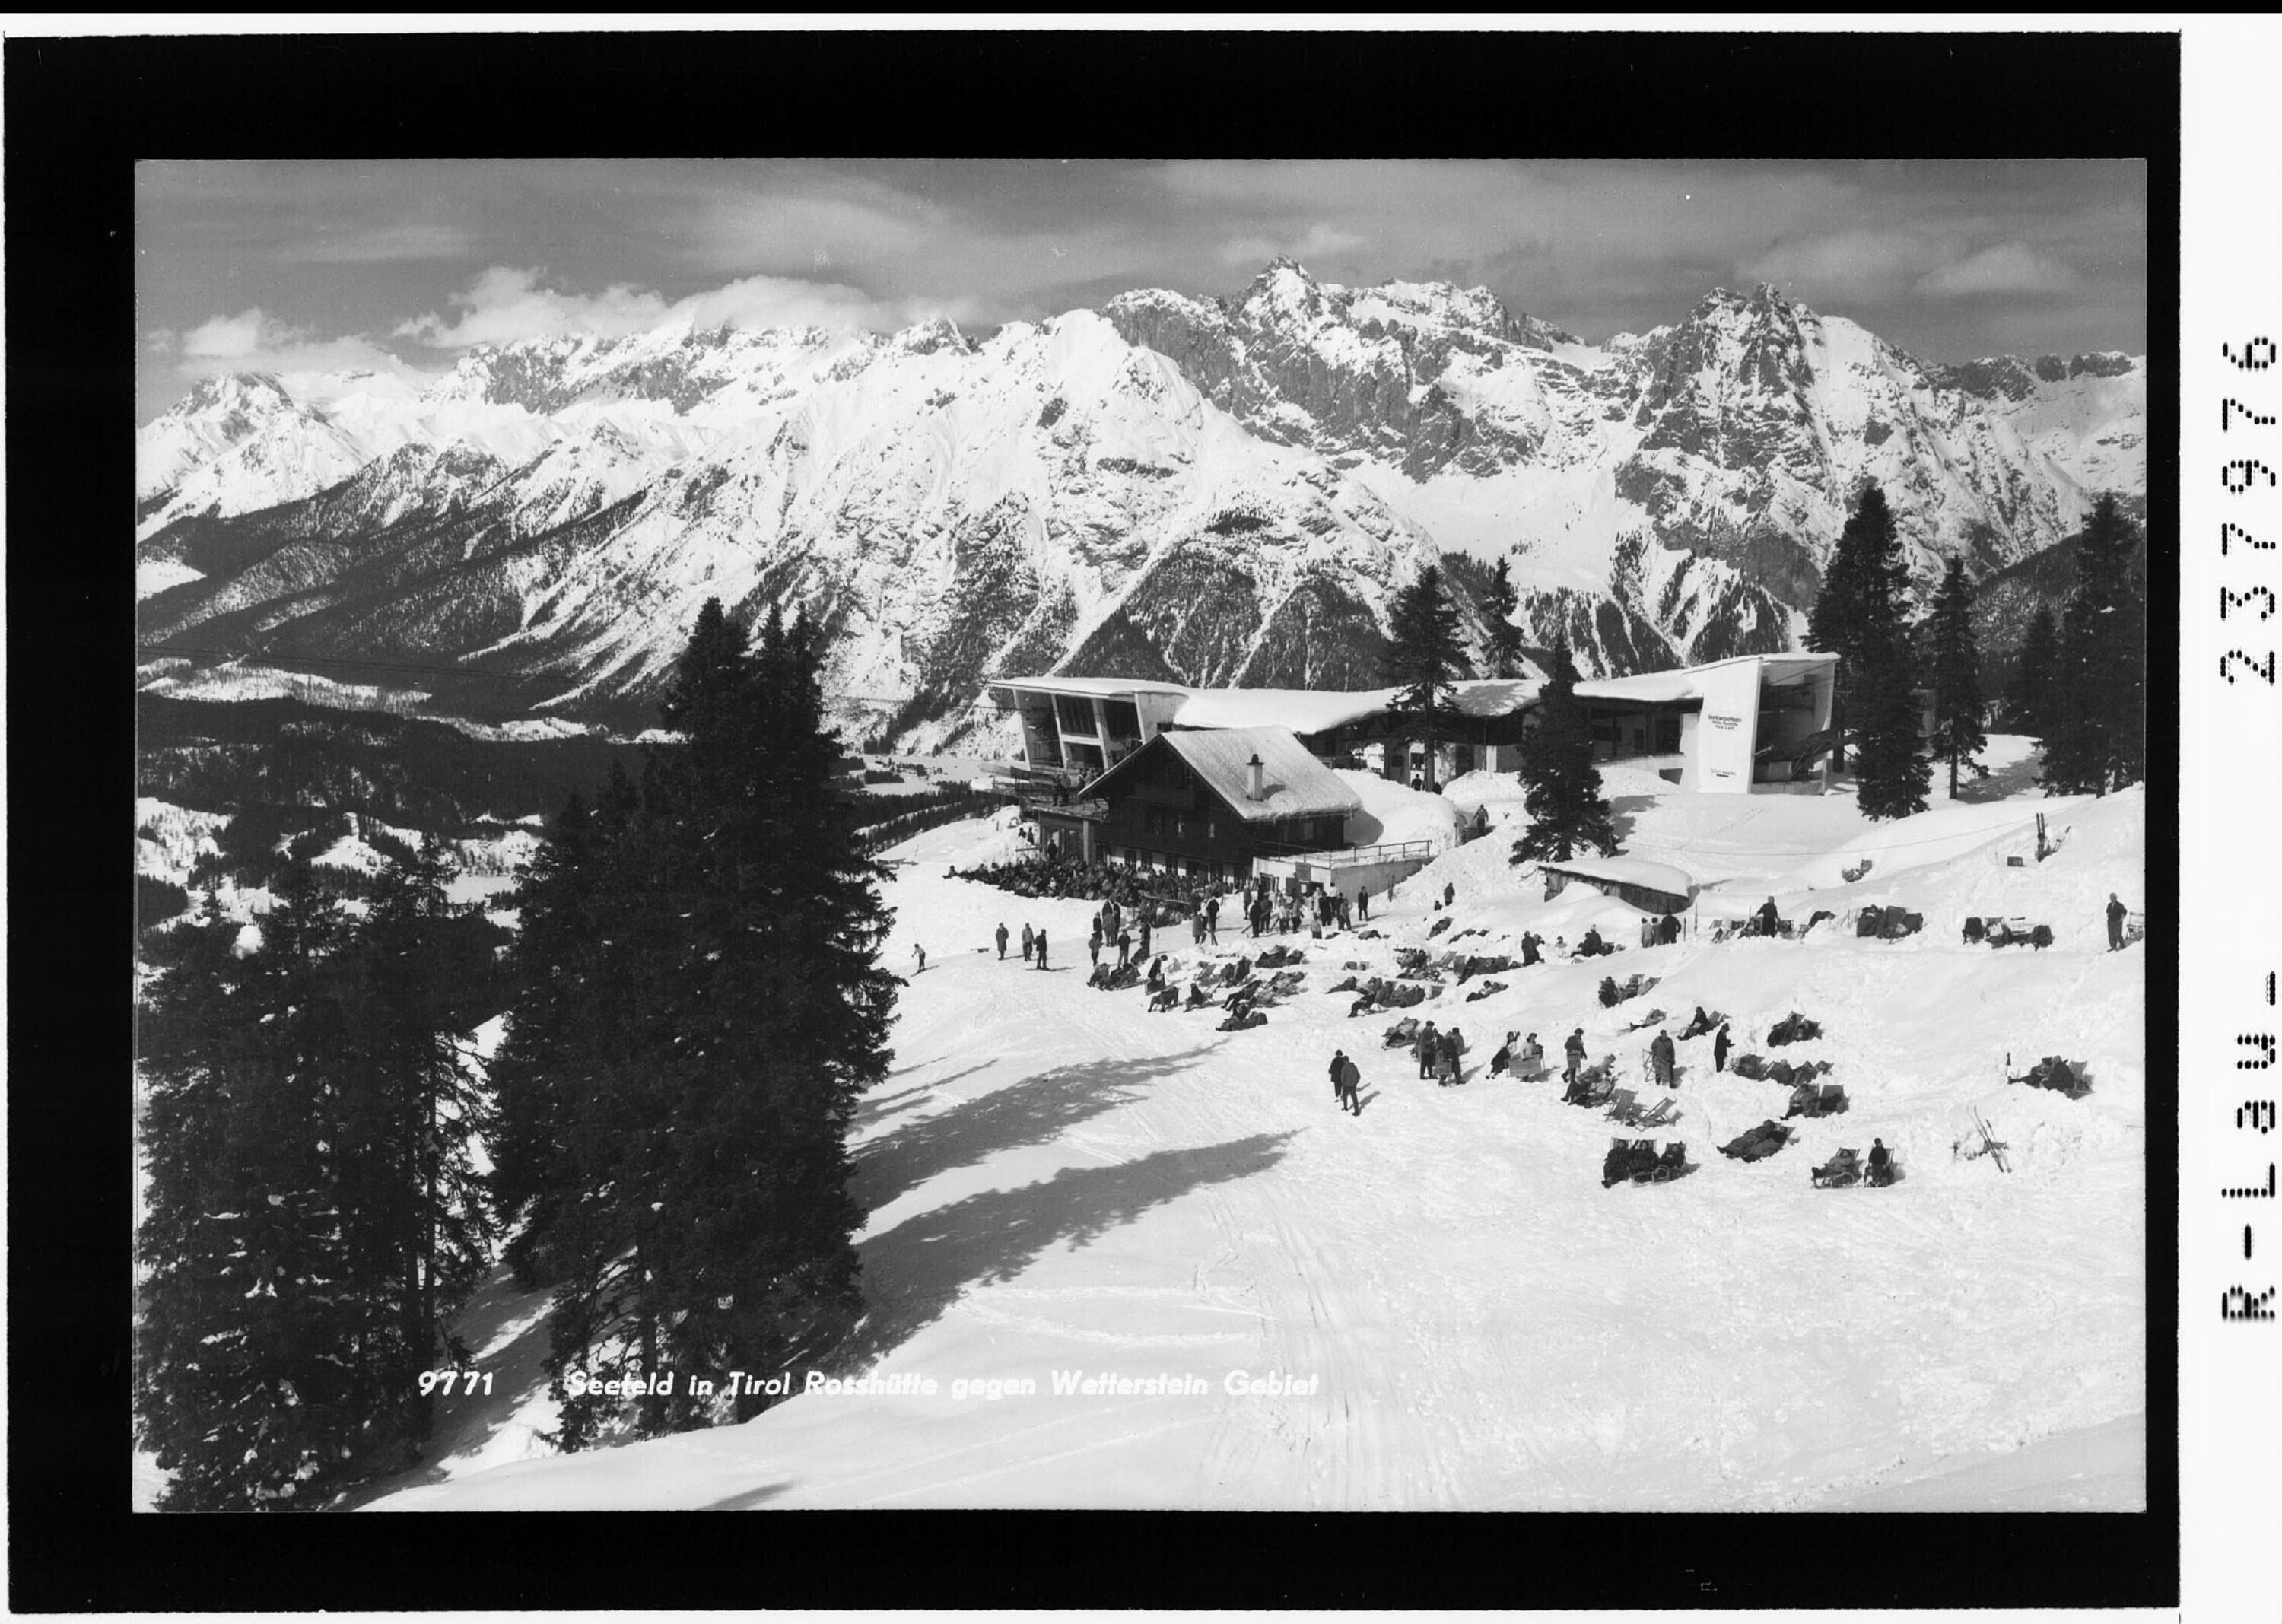 Seefeld in Tirol / Rosshütte gegen Wetterstein Gebirge></div>


    <hr>
    <div class=